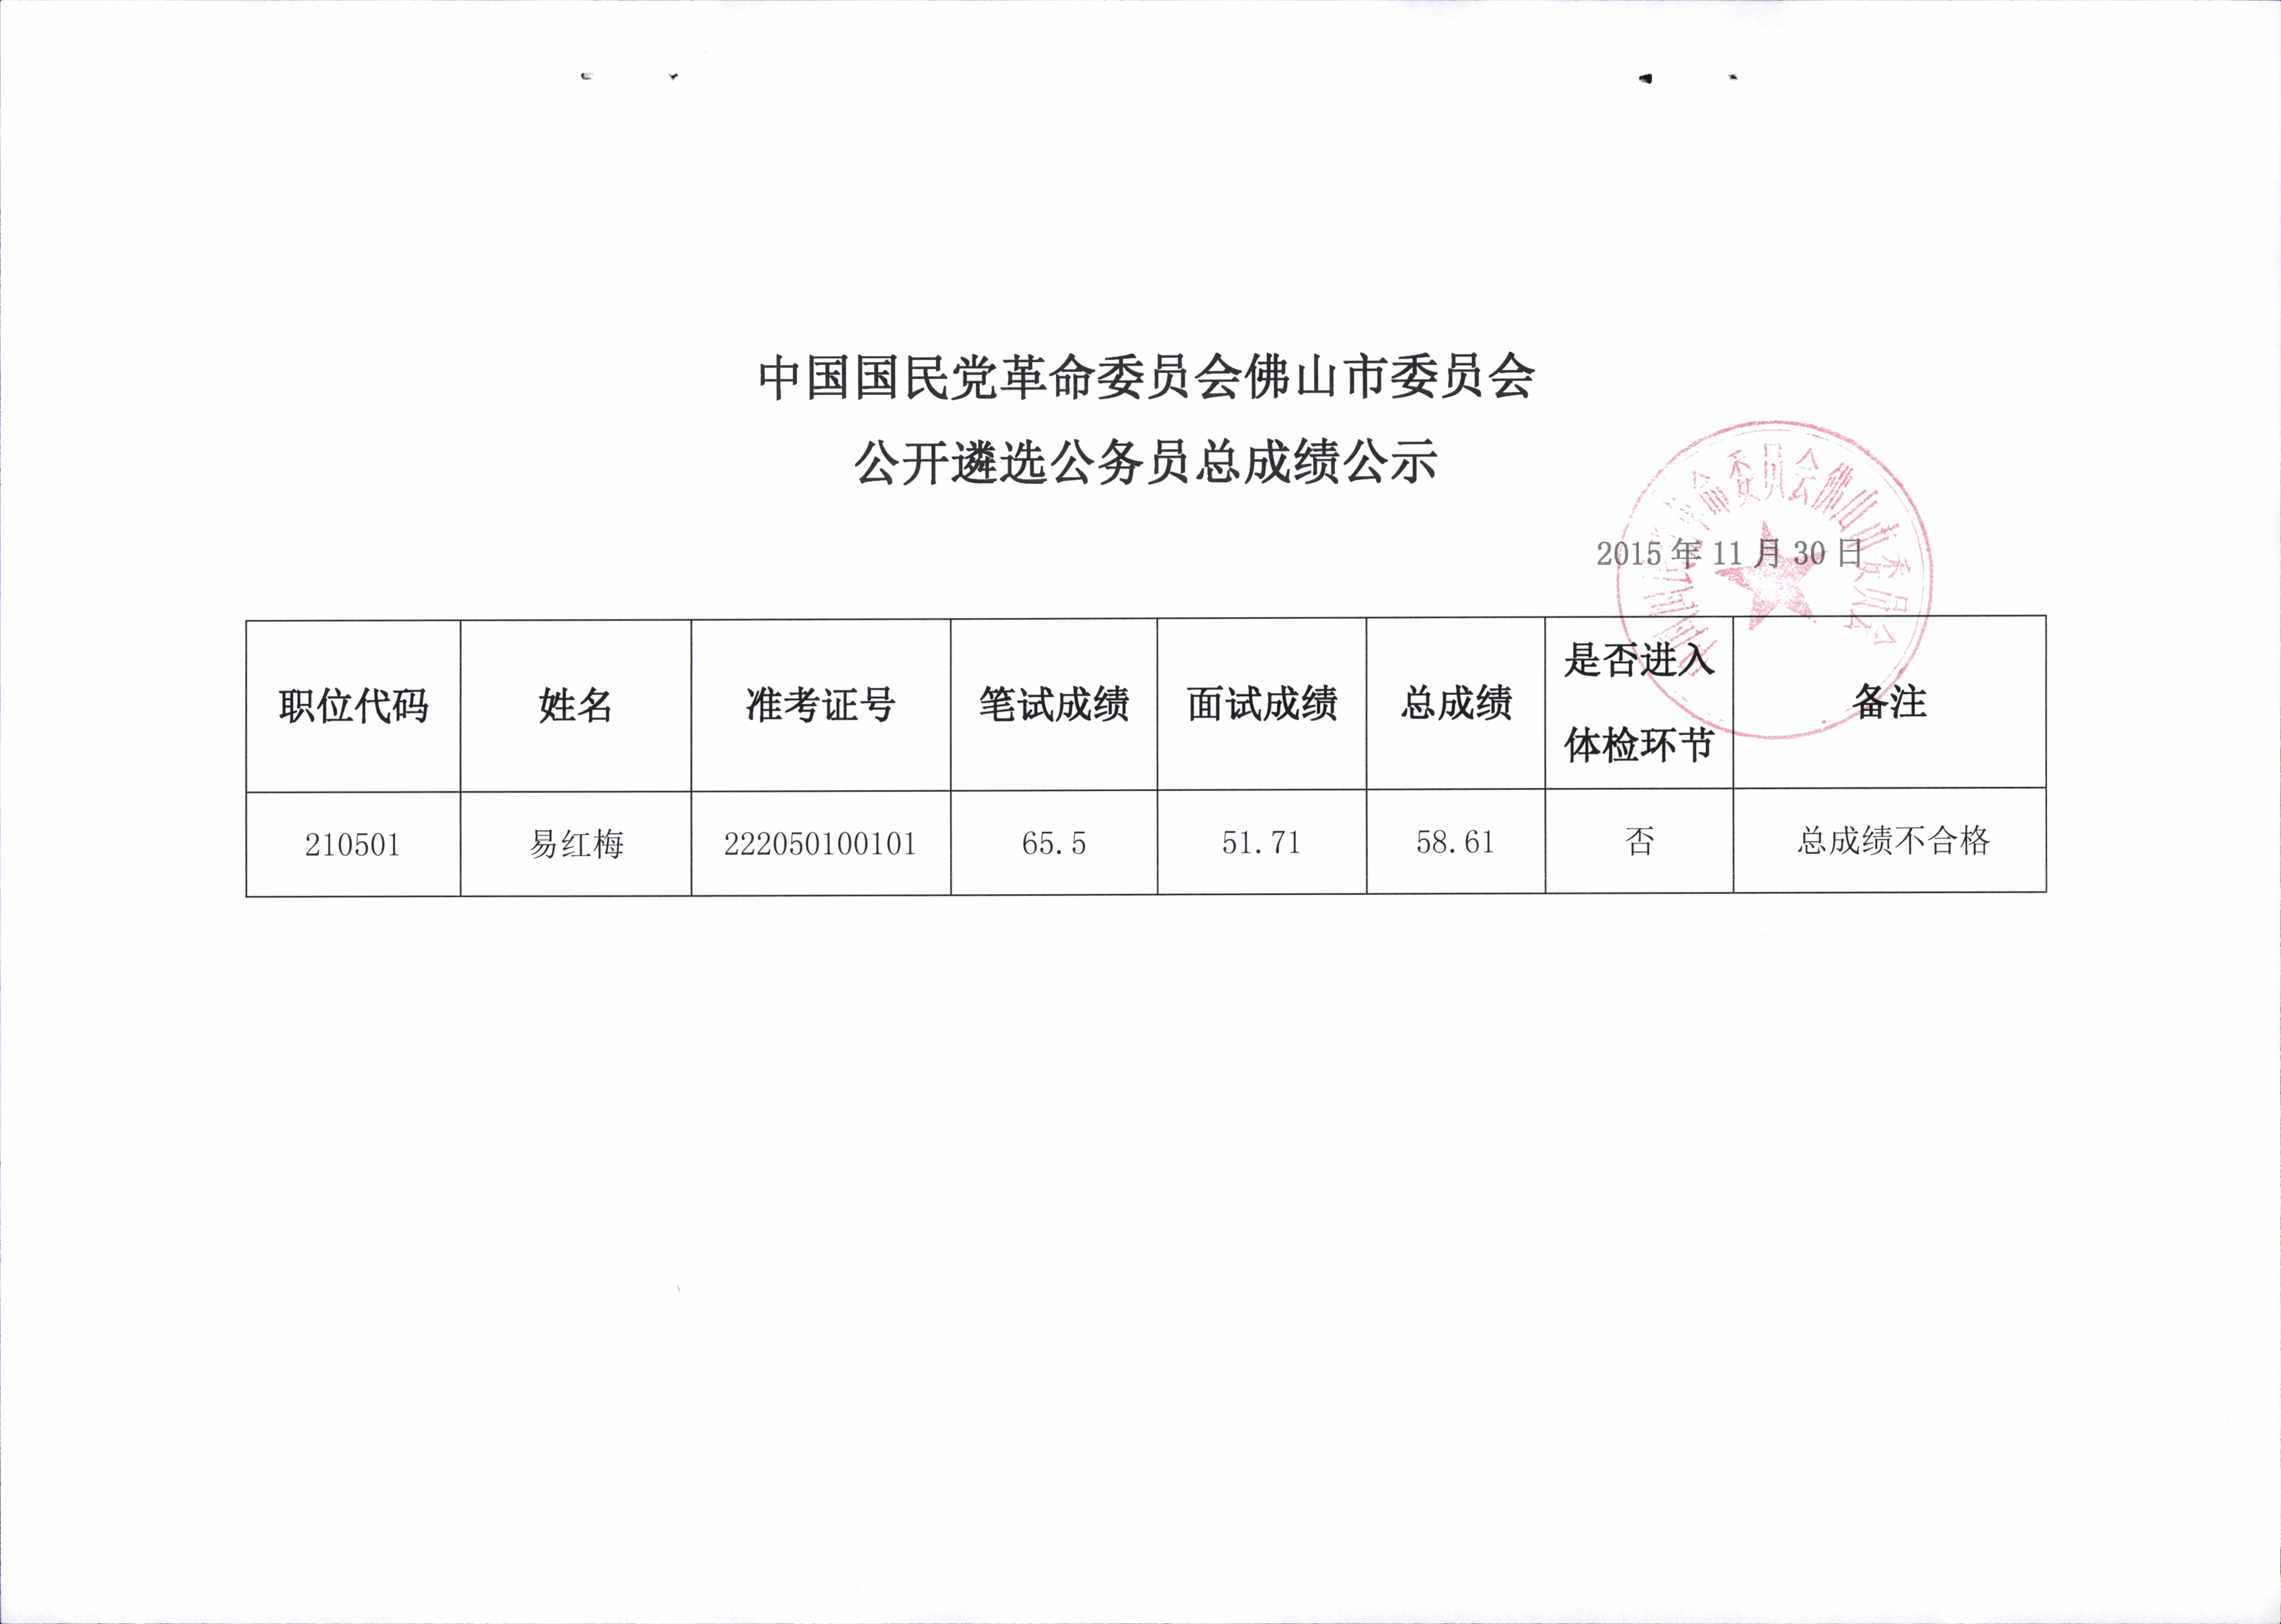 中国国民党革命委员会佛山市委员会2015年公开遴选公务员总成绩公示.jpg